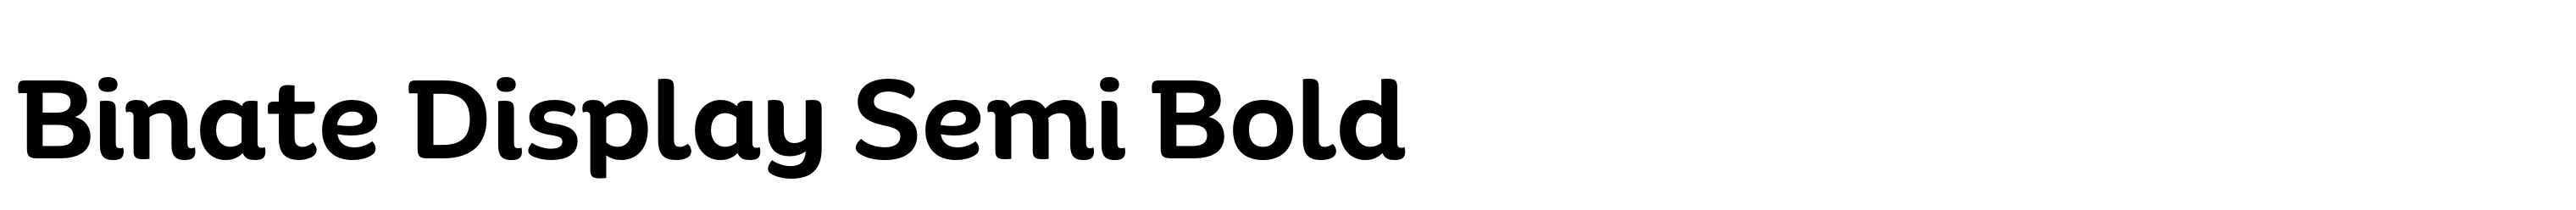 Binate Display Semi Bold